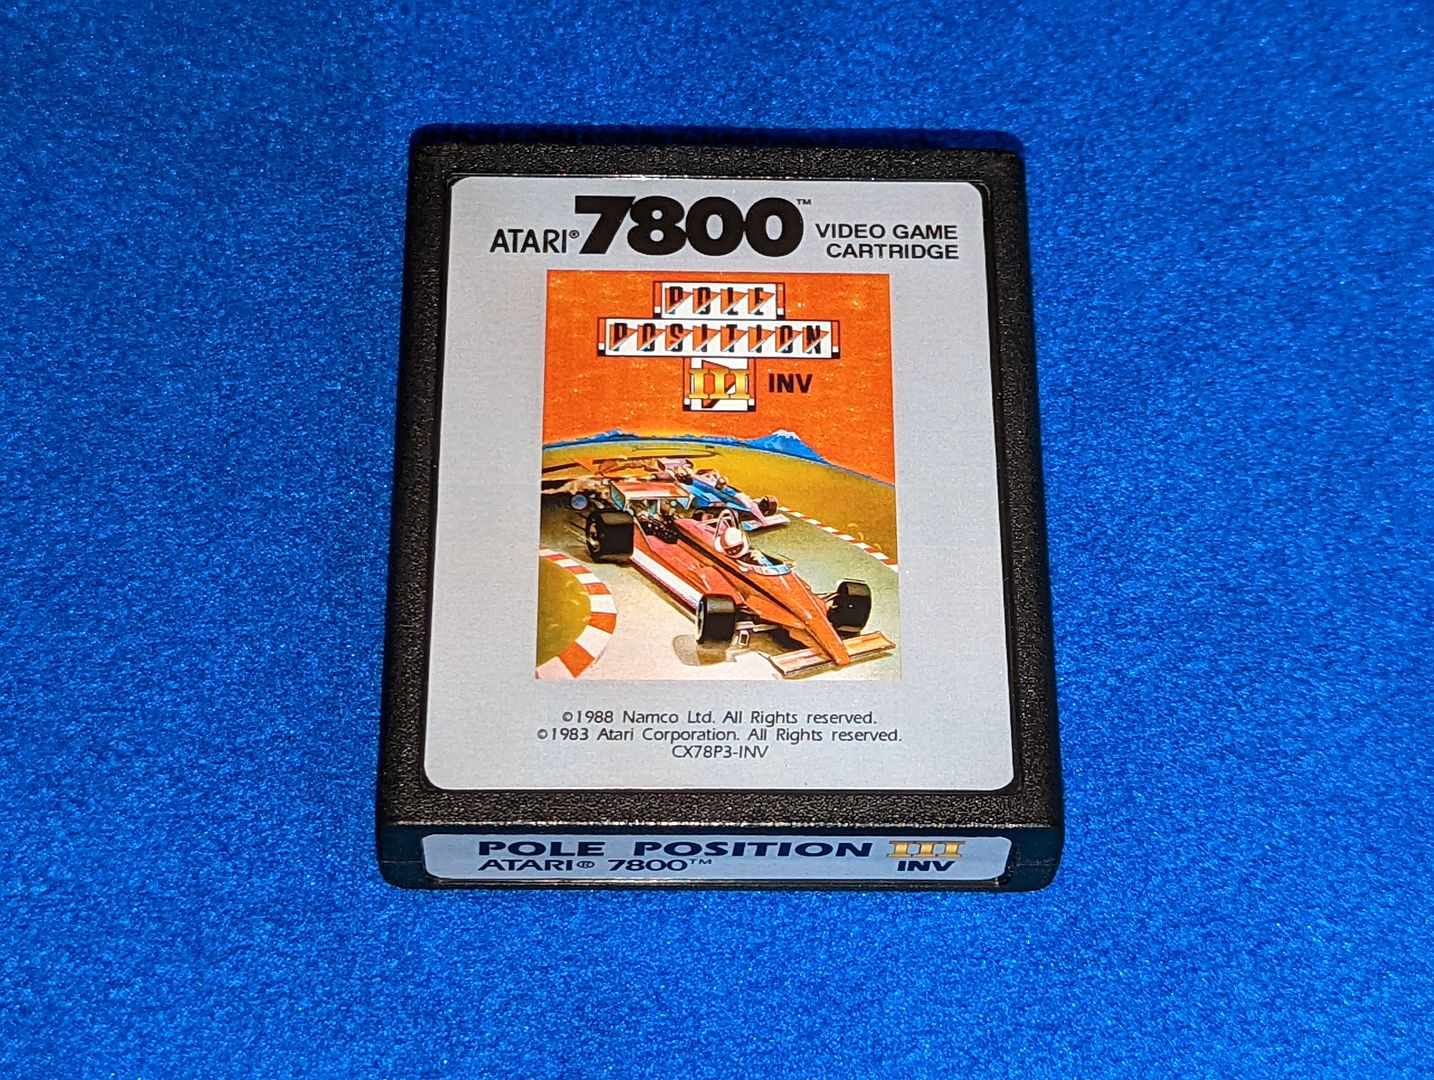 Atari_7800_(46).jpg